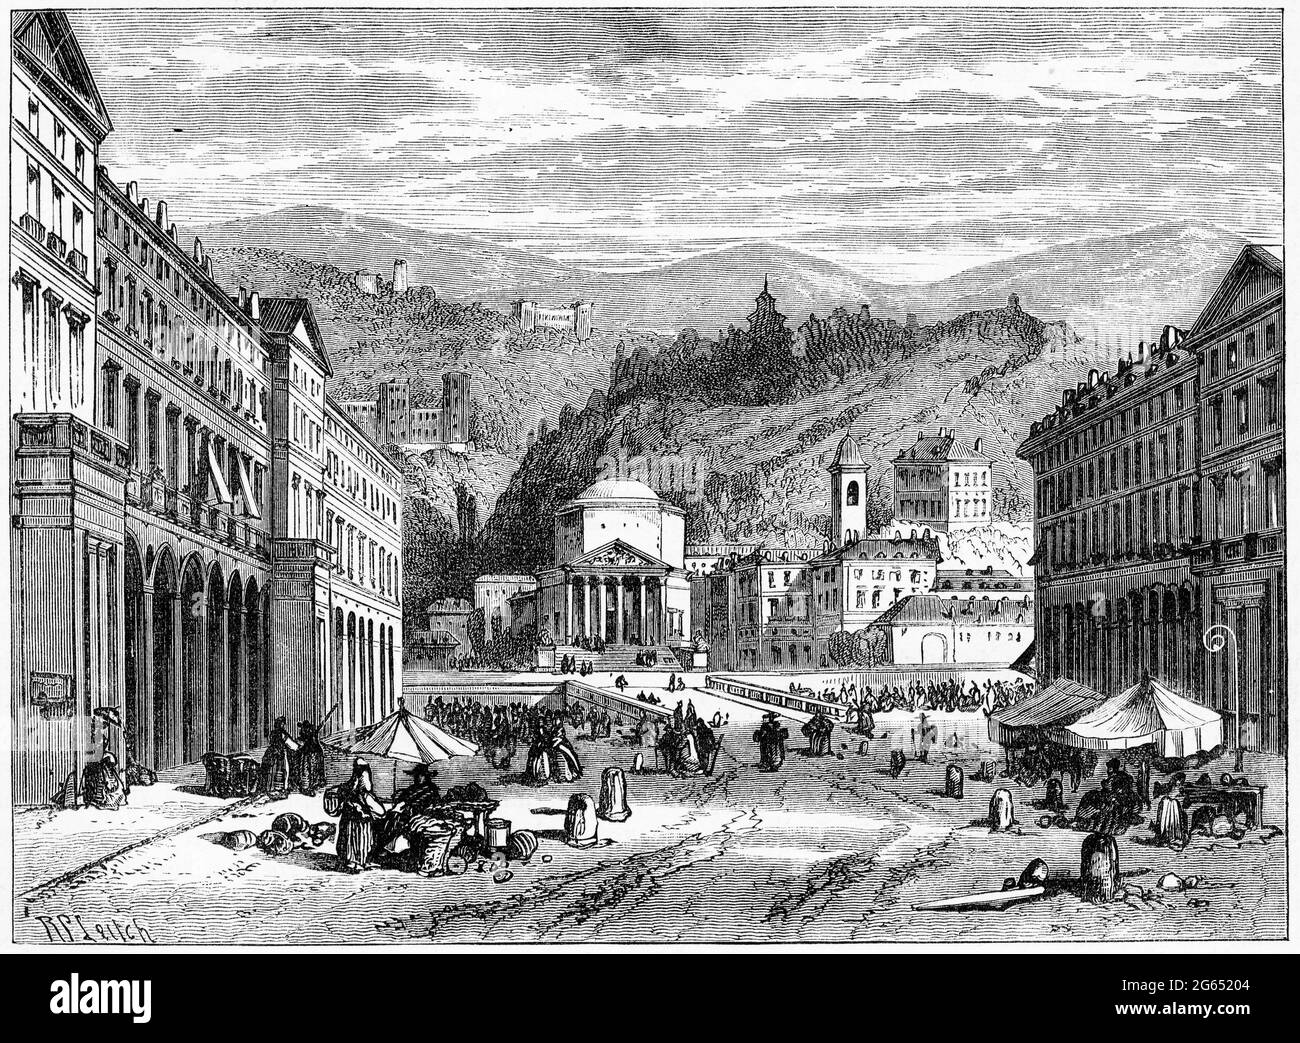 Incisione della città di Torino durante la riforma, pub. 1878 Foto Stock